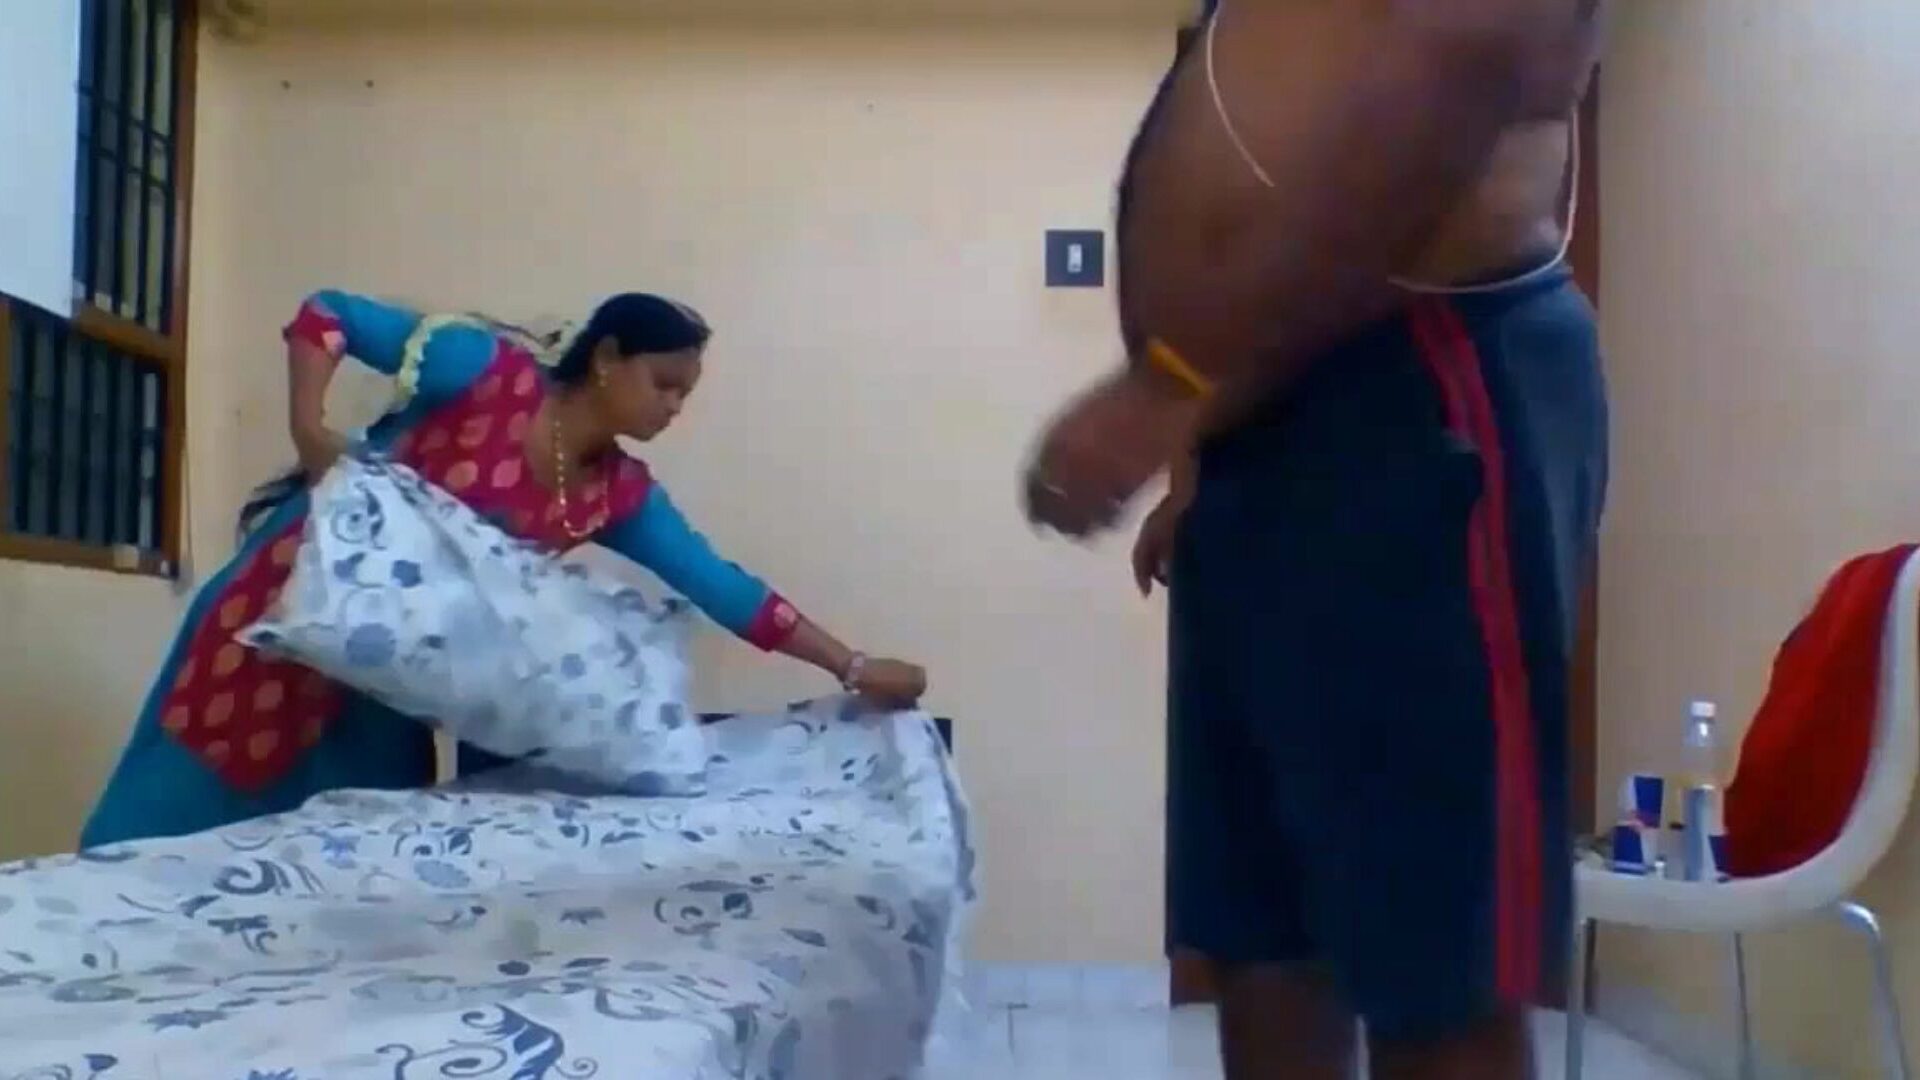 tamil fantasy: darmowe indyjskie filmy porno HD 80 - xhamster oglądaj tamilskie fantasy tube filmy z seksem za darmo na xhamster, z dominującym indyjskim kanałem tamilskim i mobilnym tamilskim filmem porno HD